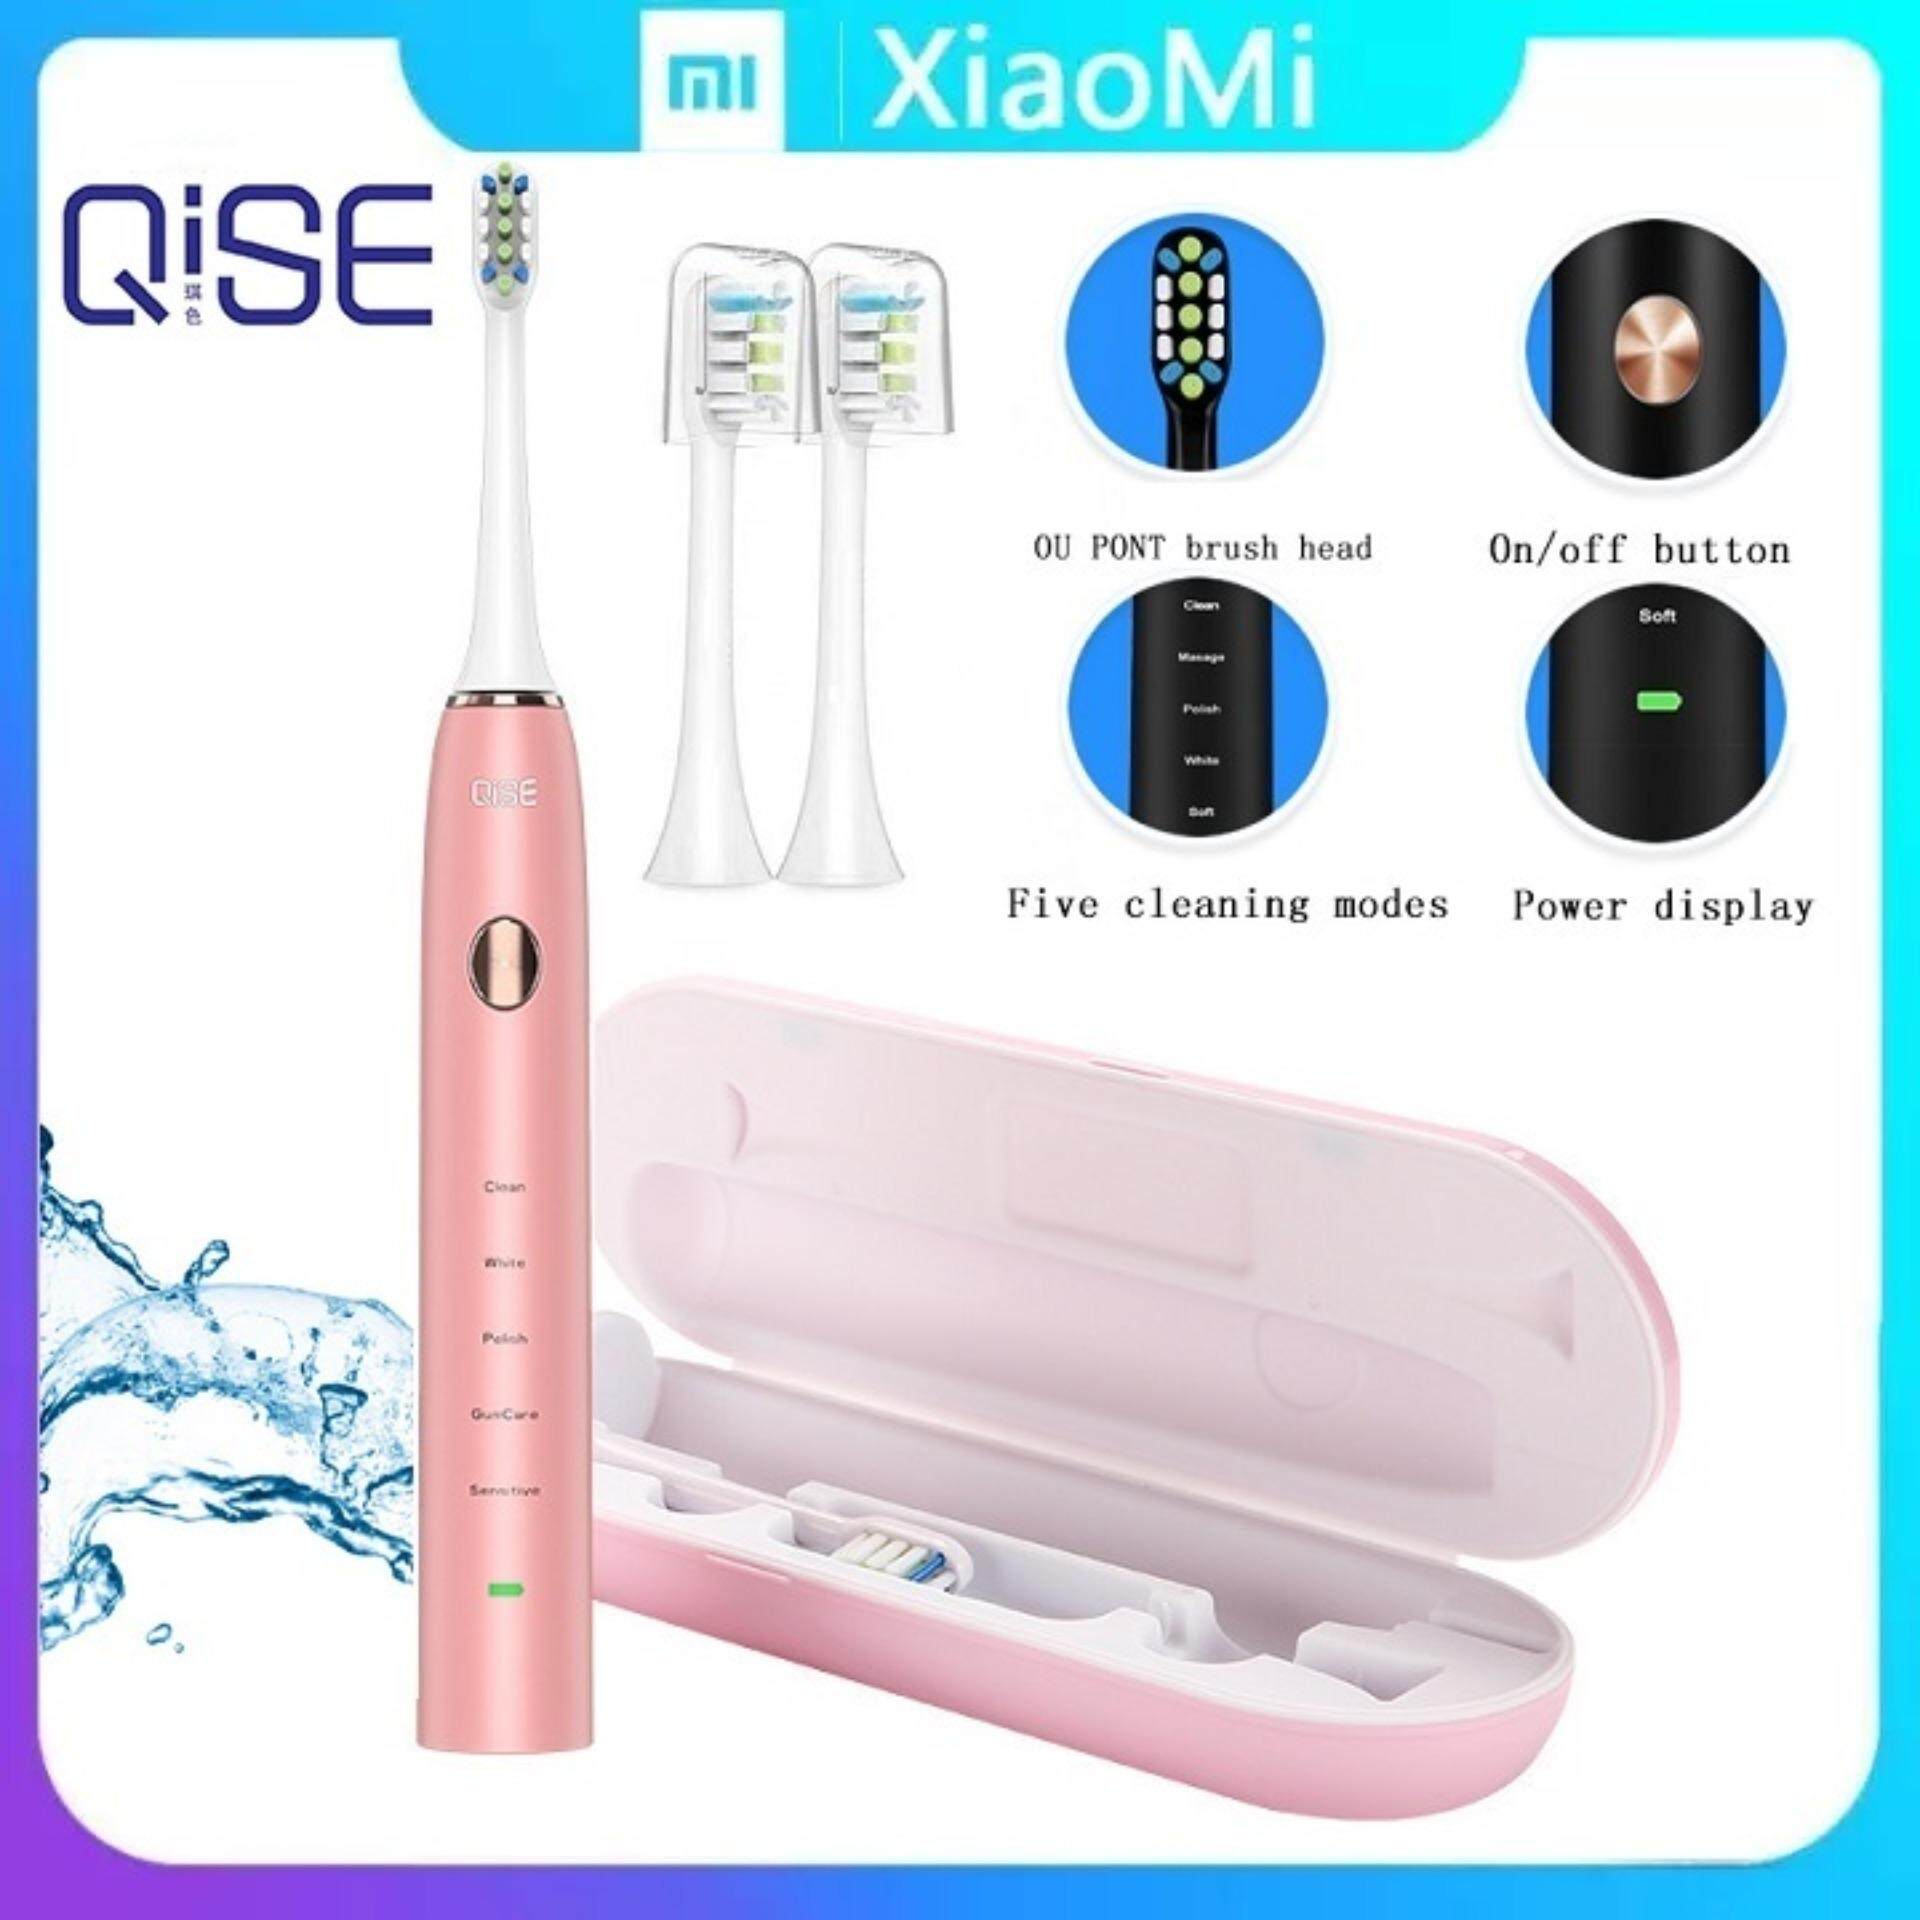 แปรงสีฟันไฟฟ้า ช่วยดูแลสุขภาพช่องปาก กระบี่ Xiaomi QISE S350 Electric Toothbrush แปรงสีฟันไฟฟ้า Waterproof IPX7 5 Modes 3 Intensities 36800 Strokes min 2 Pcs Rechargeable Ultrasonic Vibration Toothbrush 2 Replacement Heads